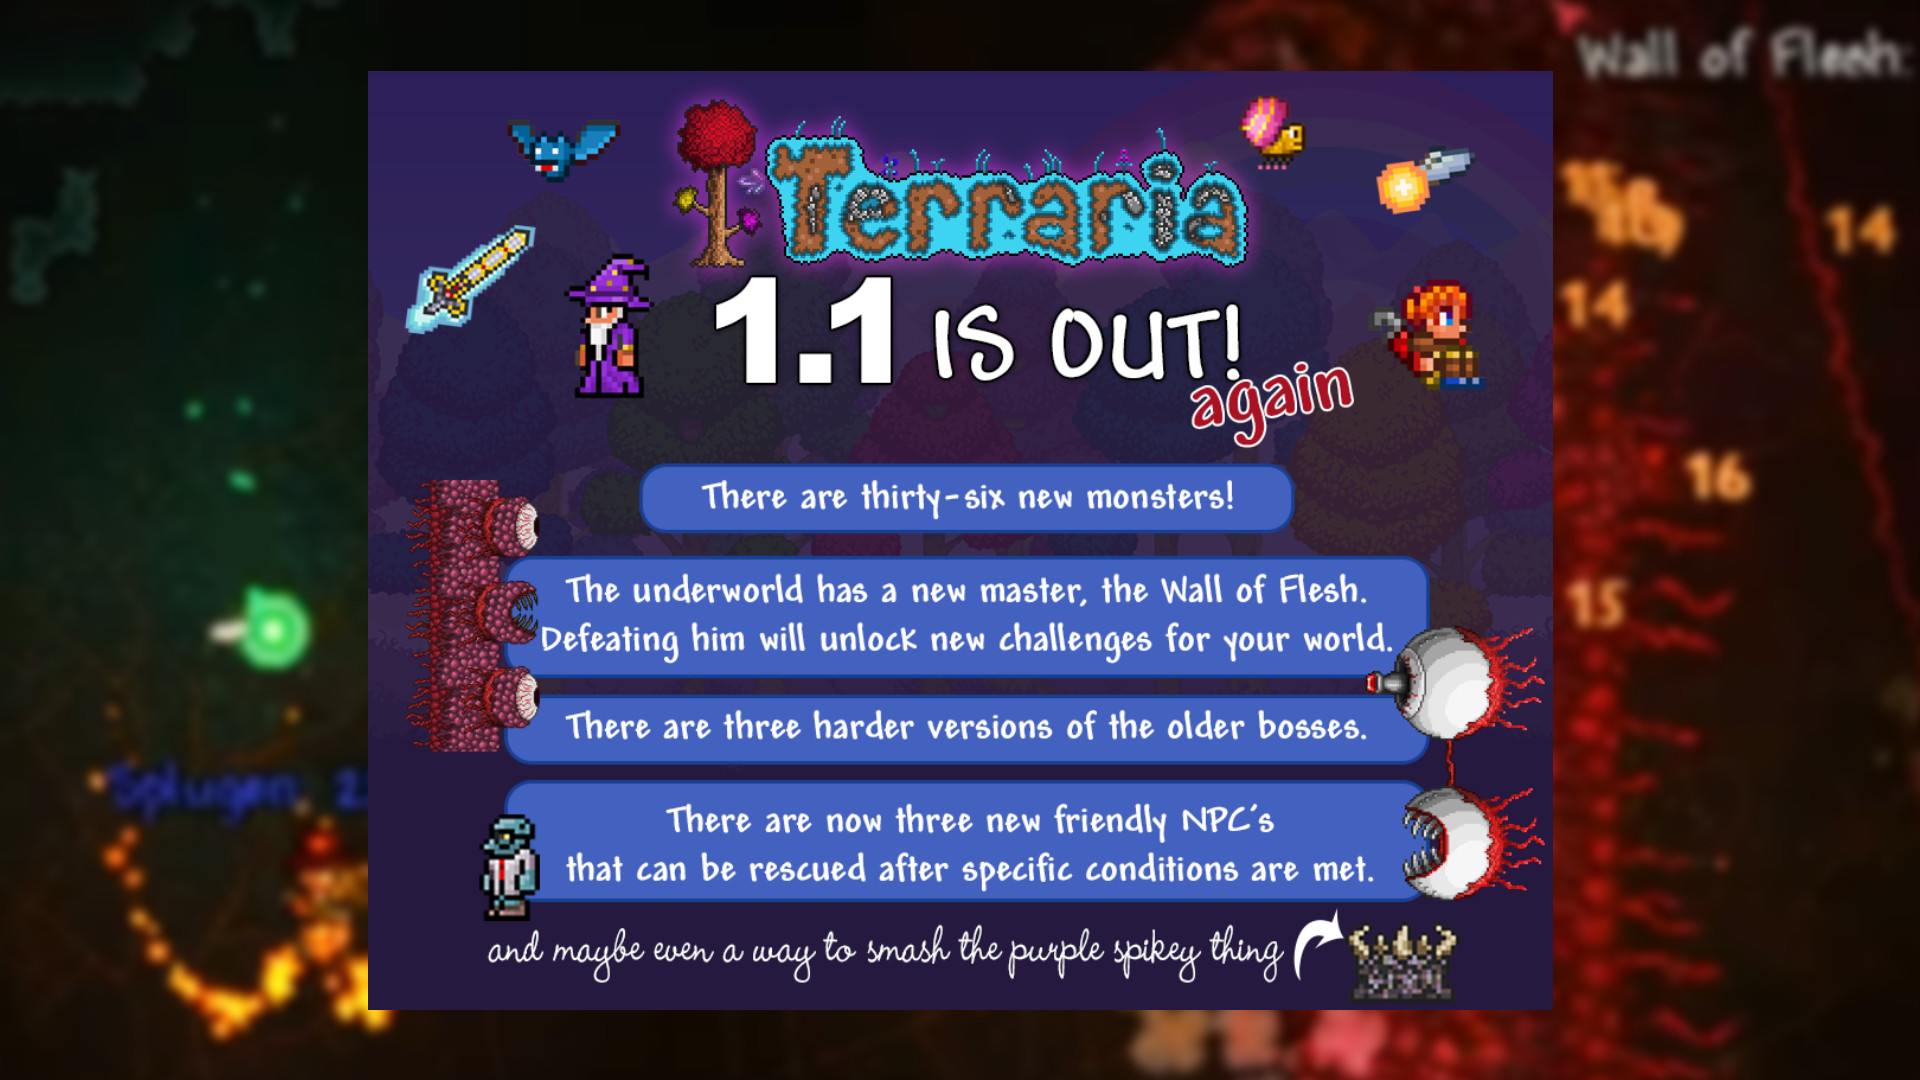 La actualización Terraria 1.1 ya está disponible (nuevamente): póster publicitario 